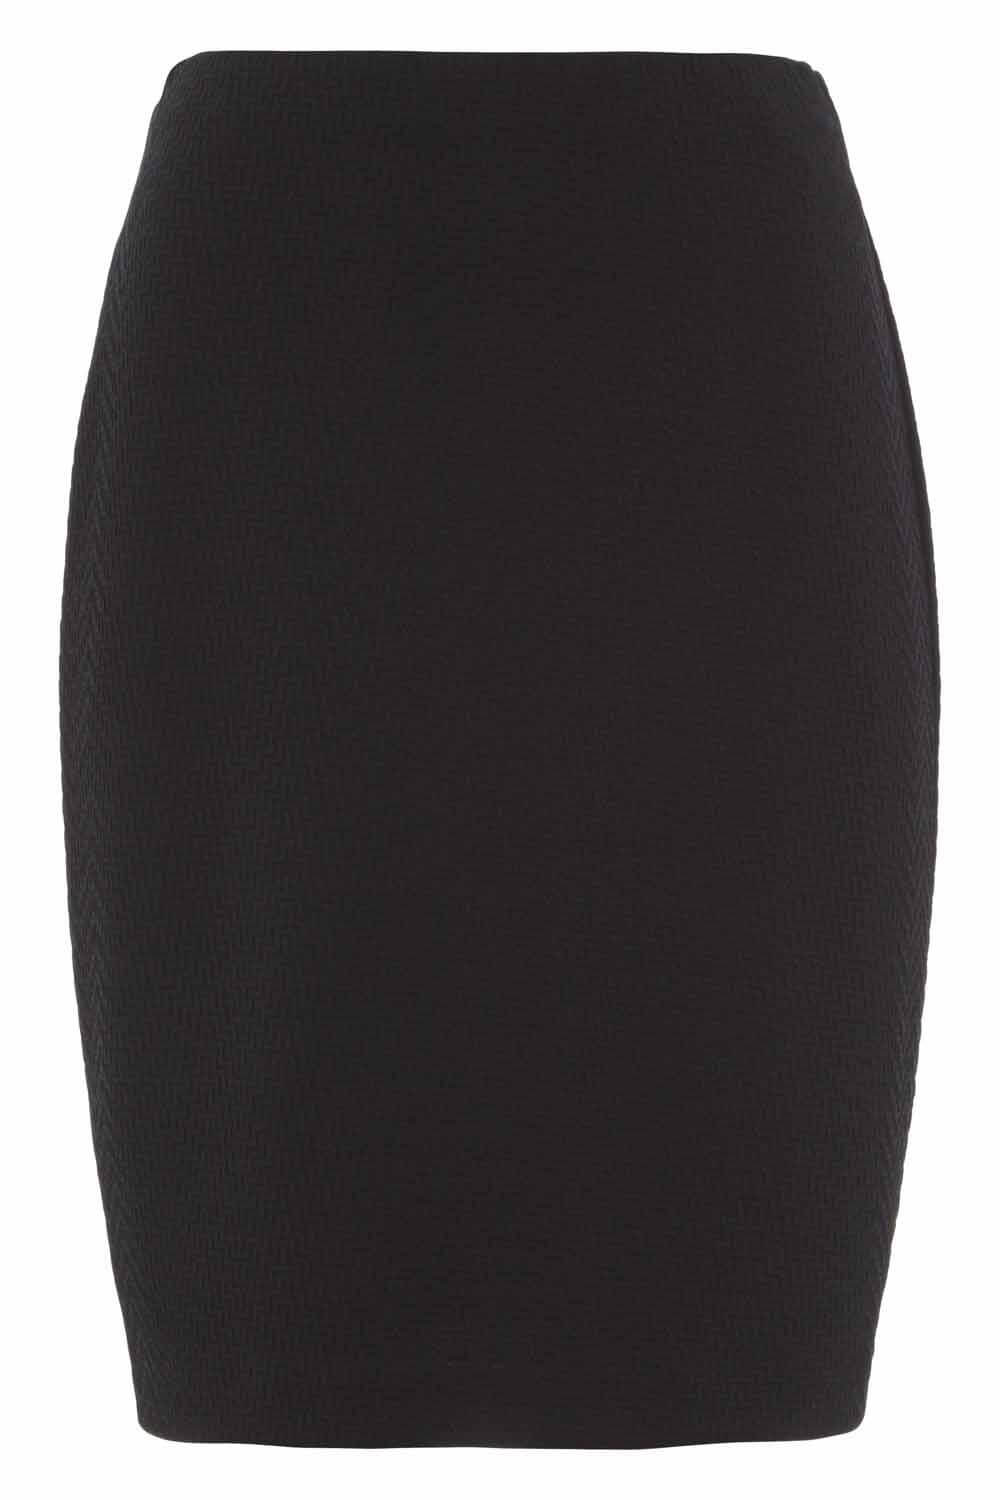 Black Short Textured Skirt, Image 2 of 2